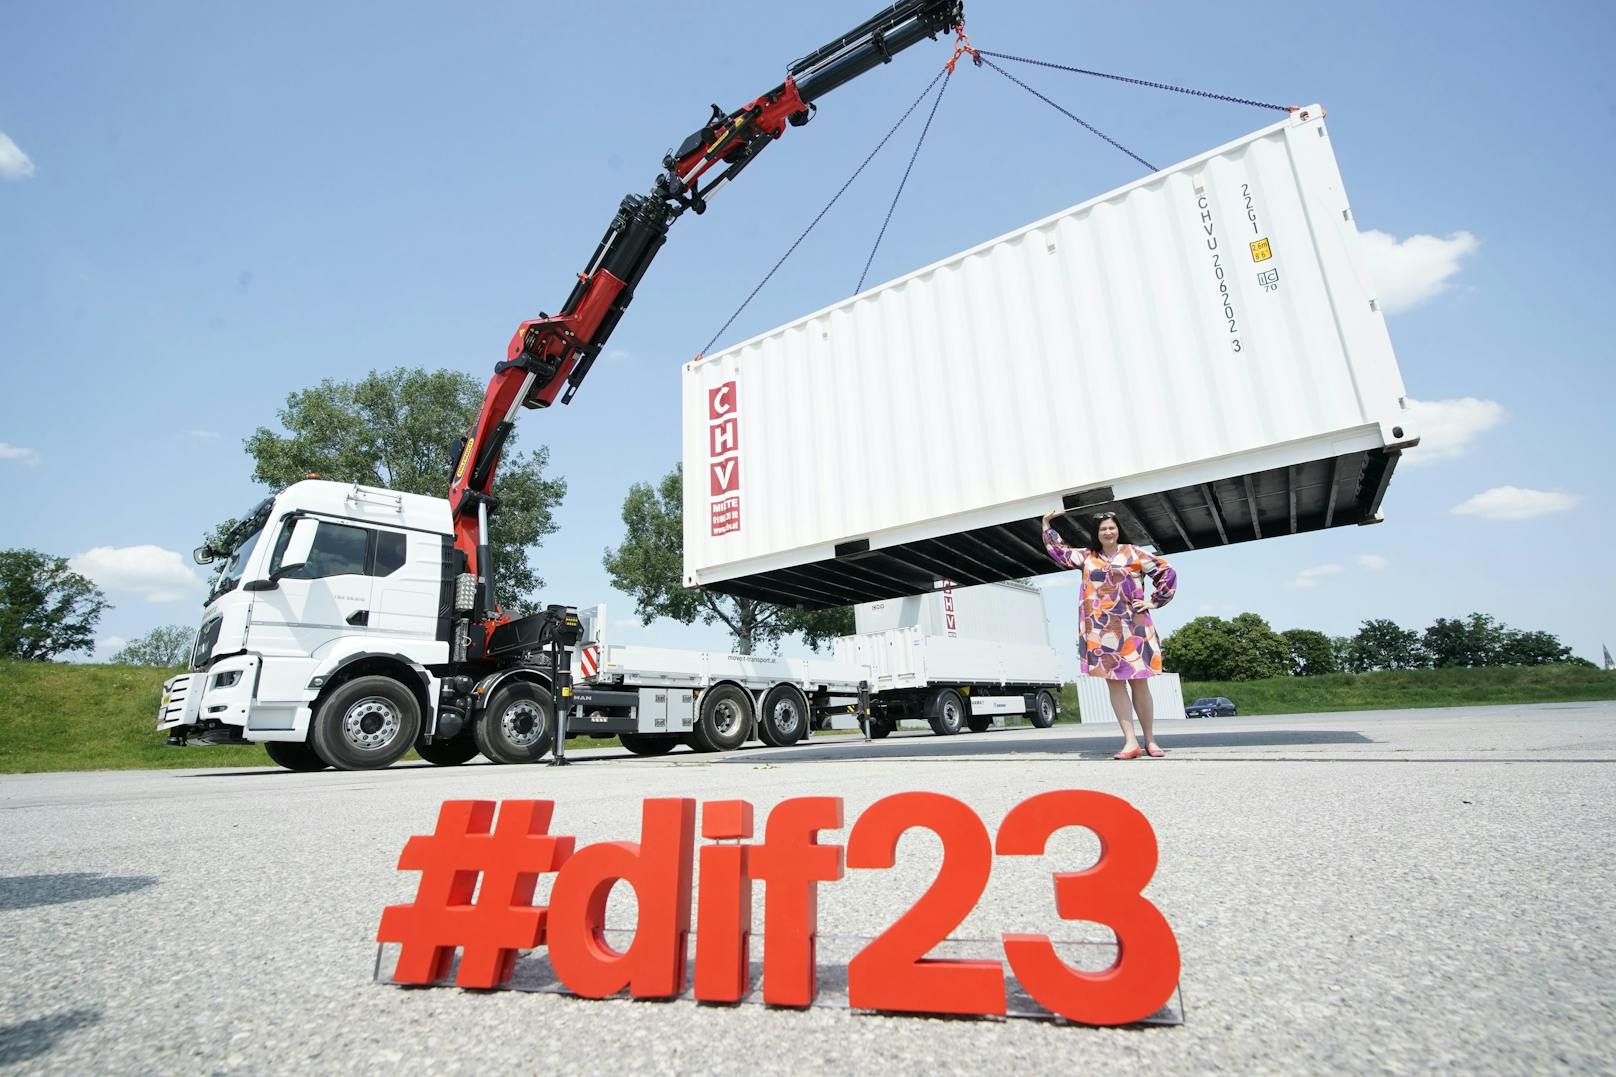 SPÖ Wien-Landesparteisekretärin Barbara Novak "begrüßte" die ersten Container, die für den Aufbau des Donauinselfests angeliefert wurden.